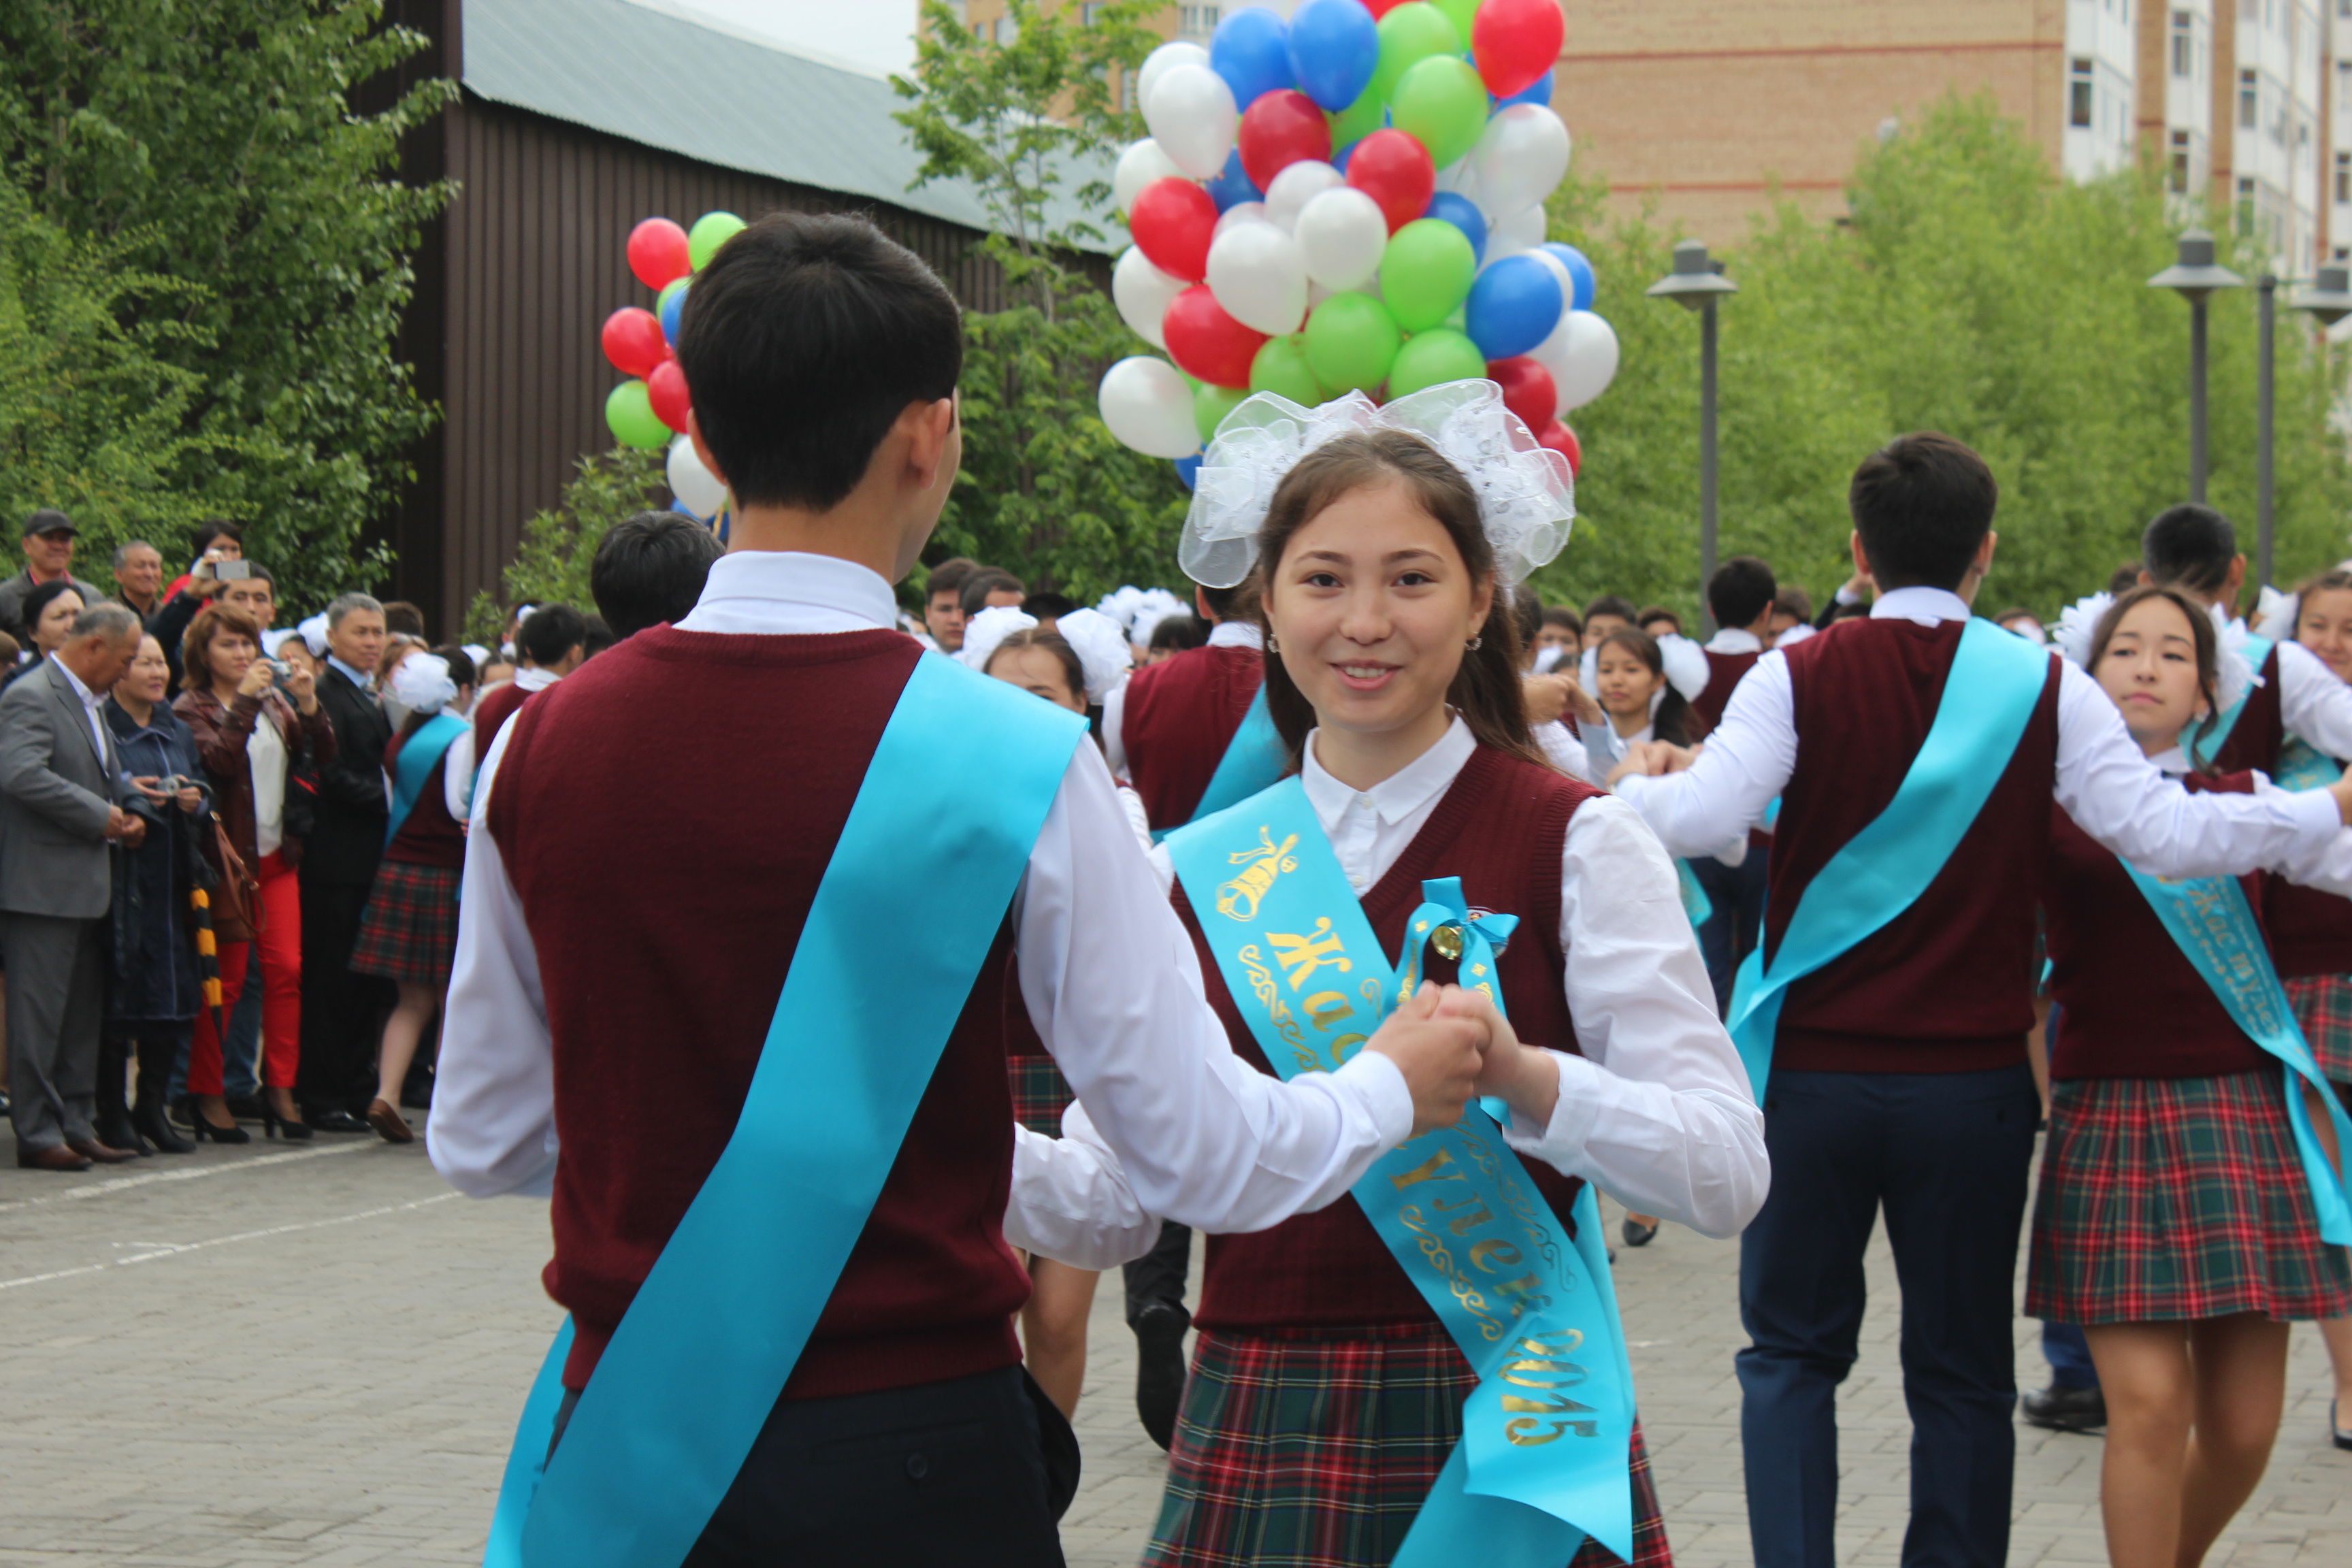 Сколько школ в казахстане